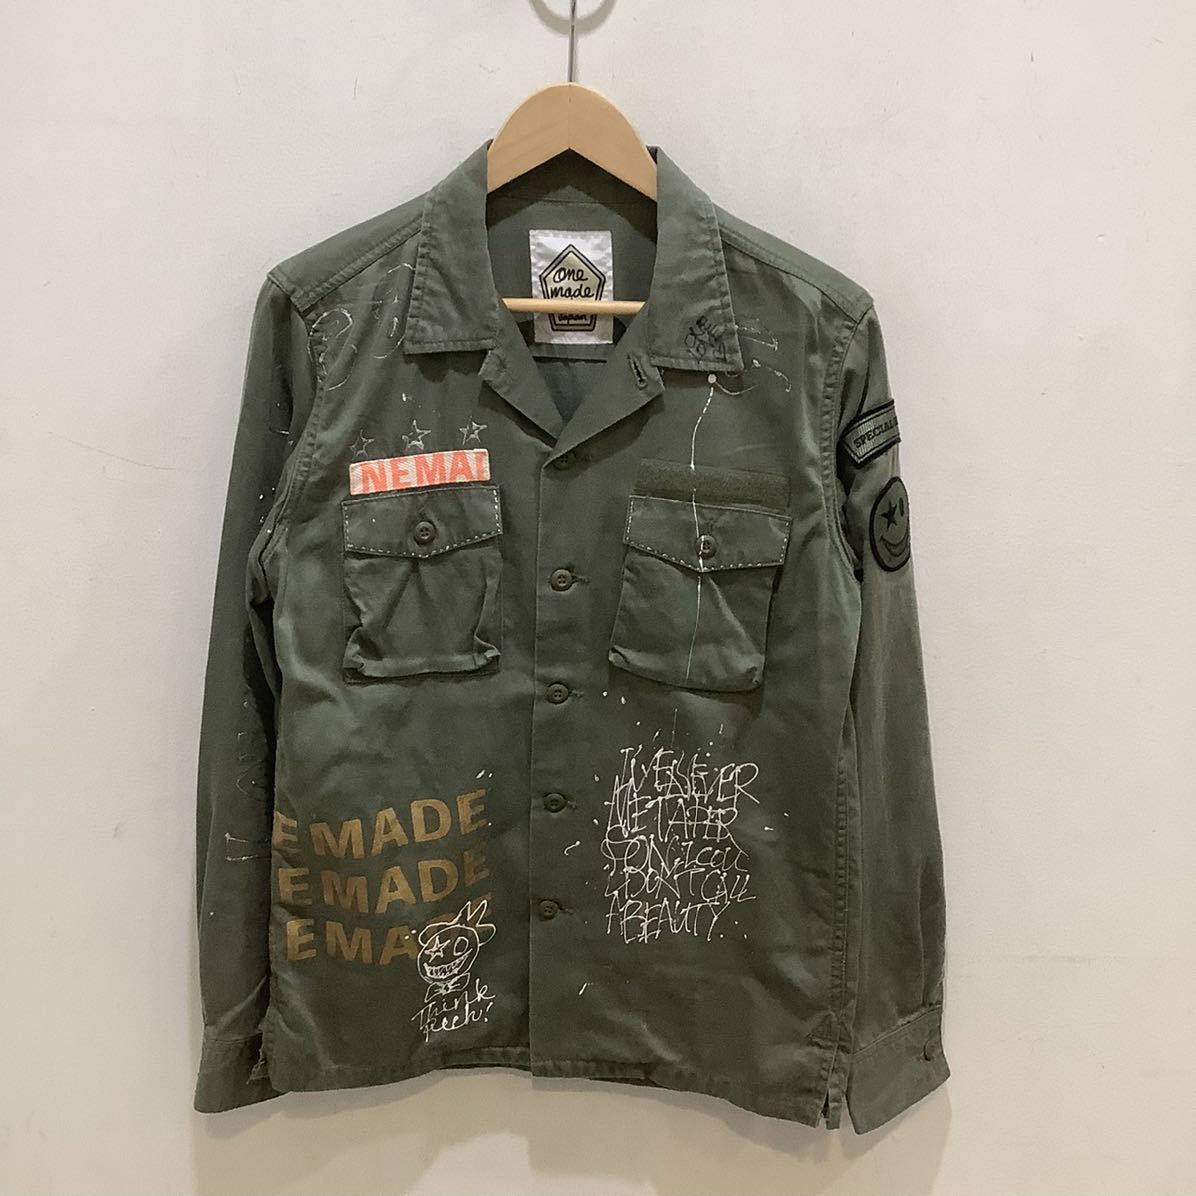 ONE MADE ワンメイド Military Shirt ミリタリー シャツ カーキ サイズS 554213